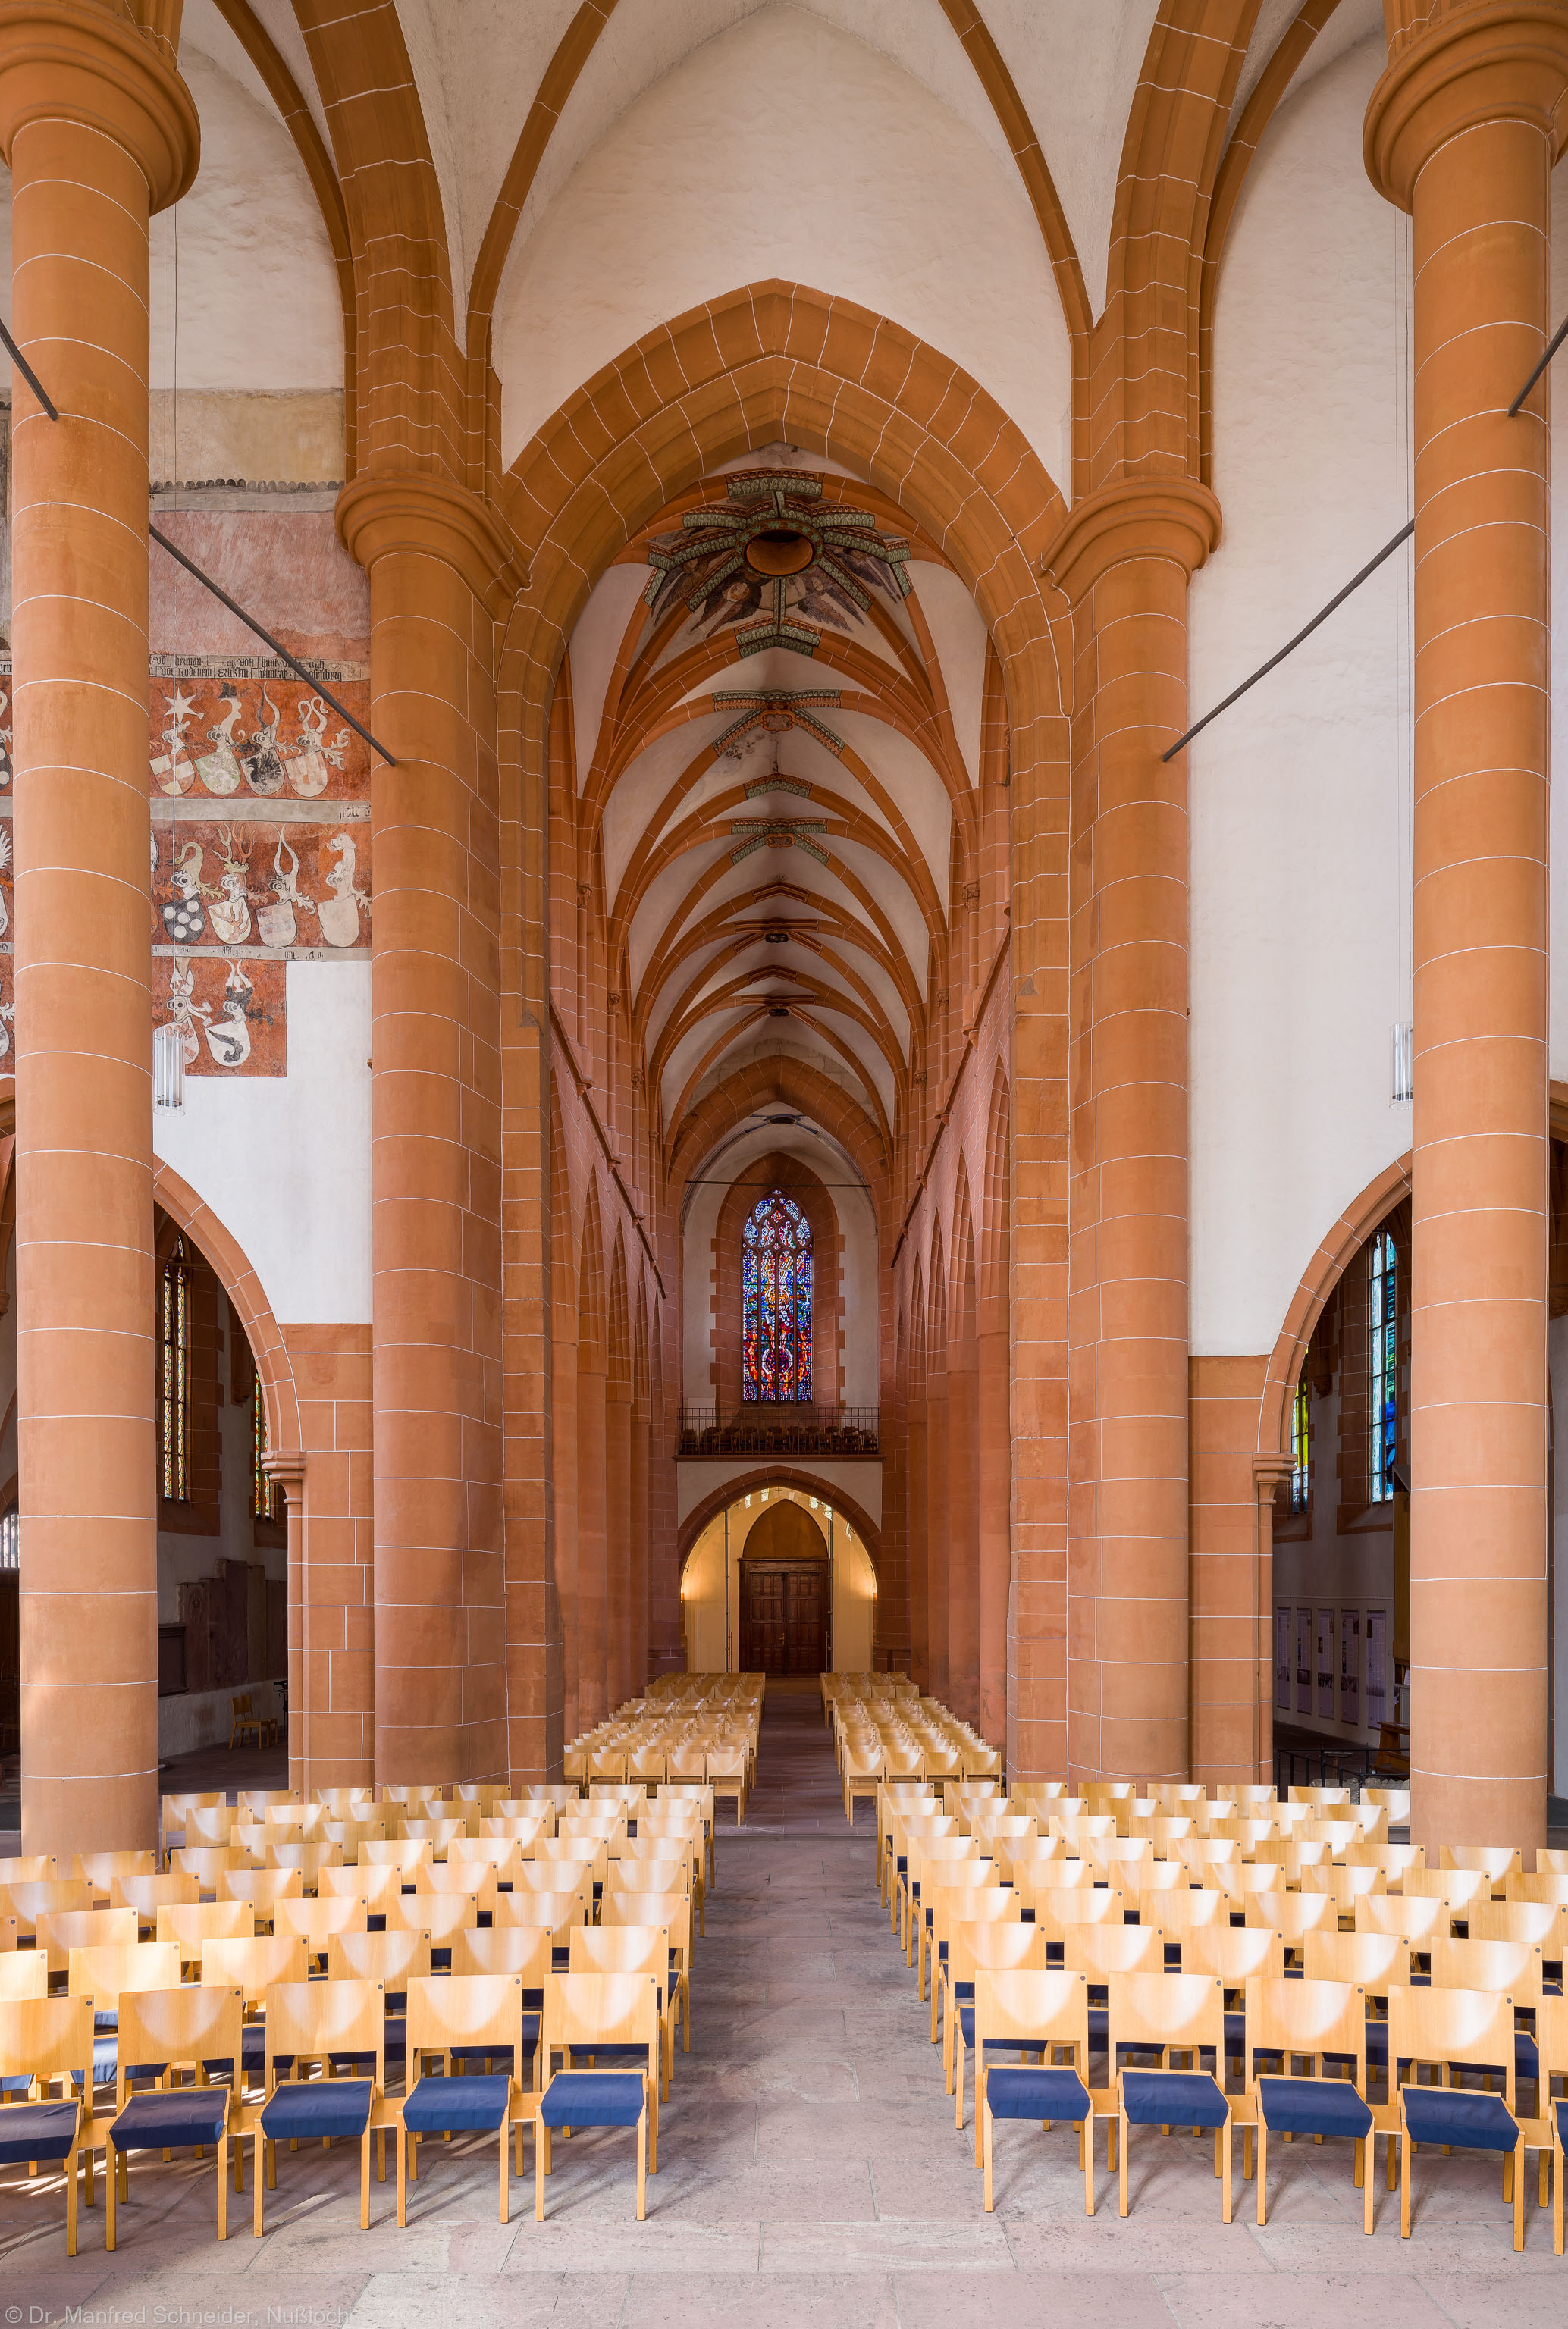 Heidelberg - Heiliggeistkirche - Chor - Blick vom Altar auf den Chor, den Triumphbogen und das Mittelschiff (aufgenommen im Mai 2014, am späten Vormittag)